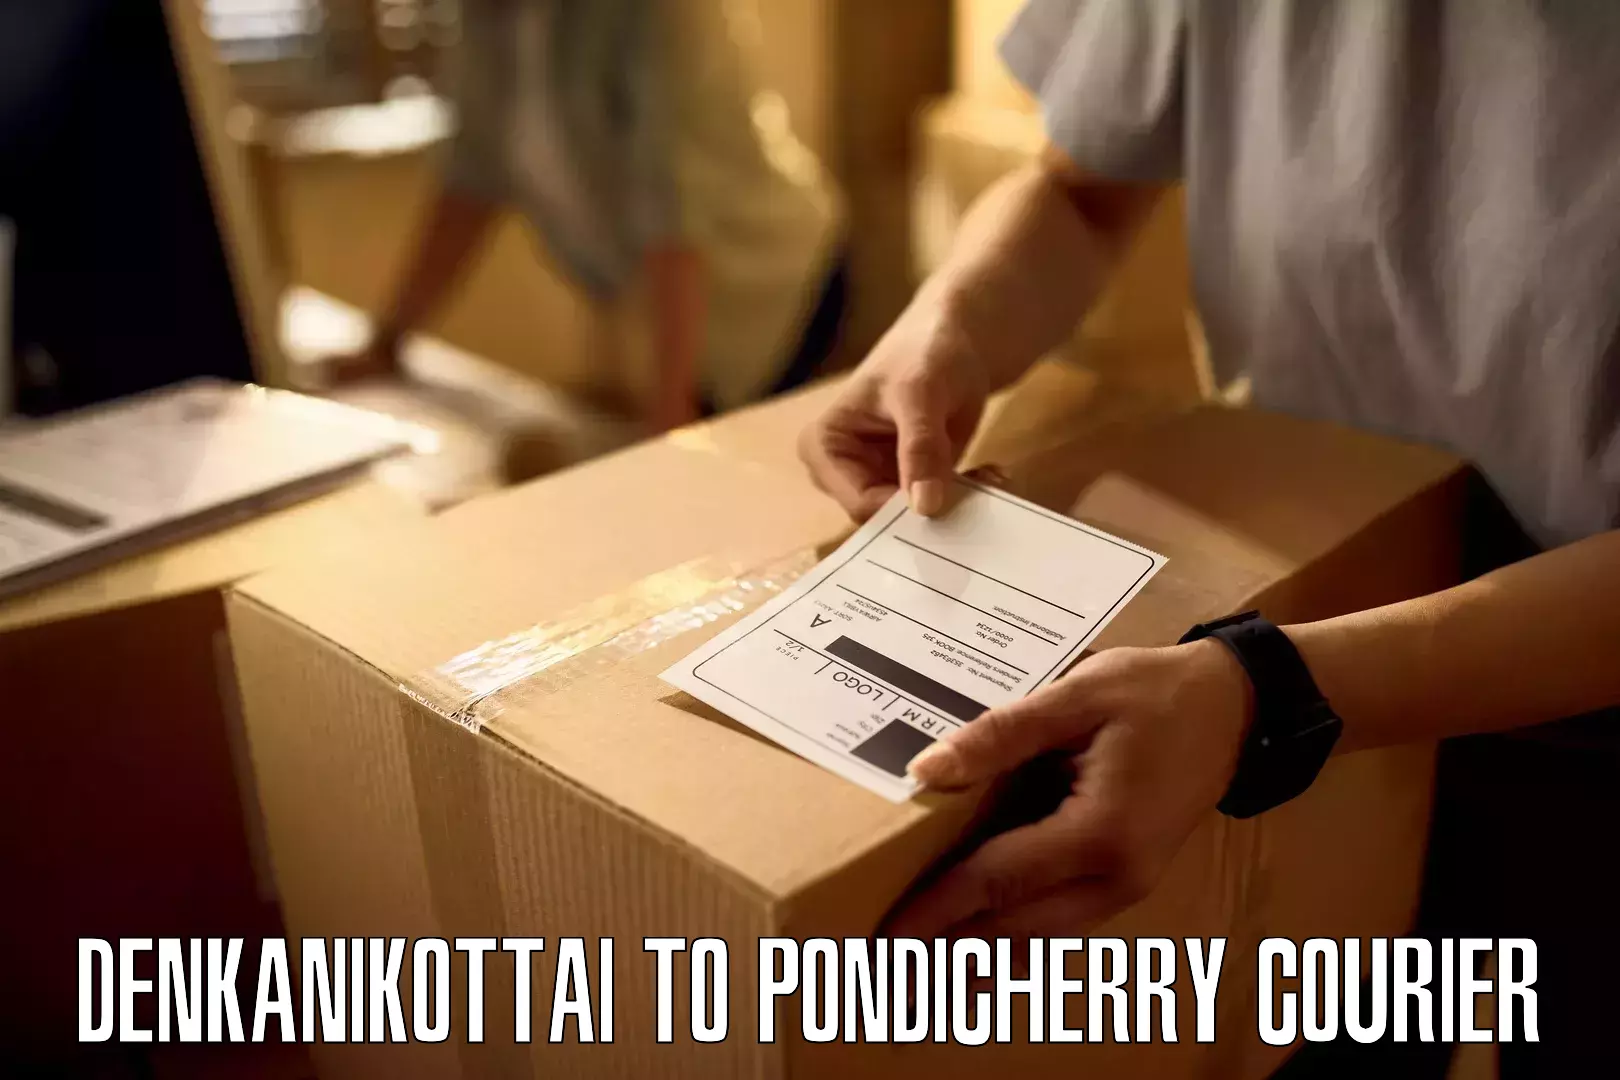 Personalized courier experiences Denkanikottai to Pondicherry